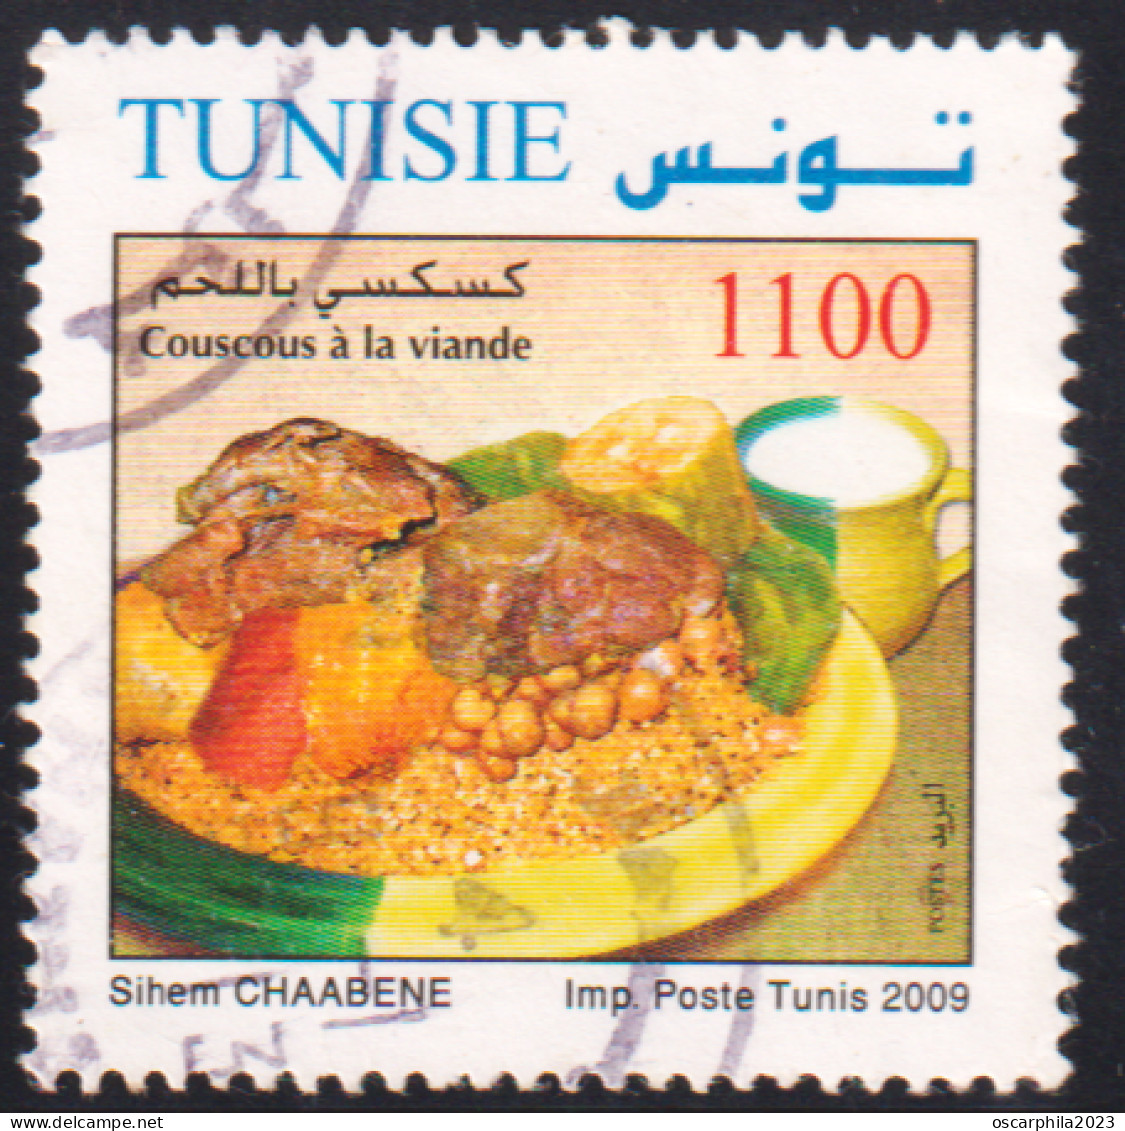 2009- Tunisie - Y&T 1650-  Plats De Tunisie - Couscous à La Viande - OBLI - Levensmiddelen